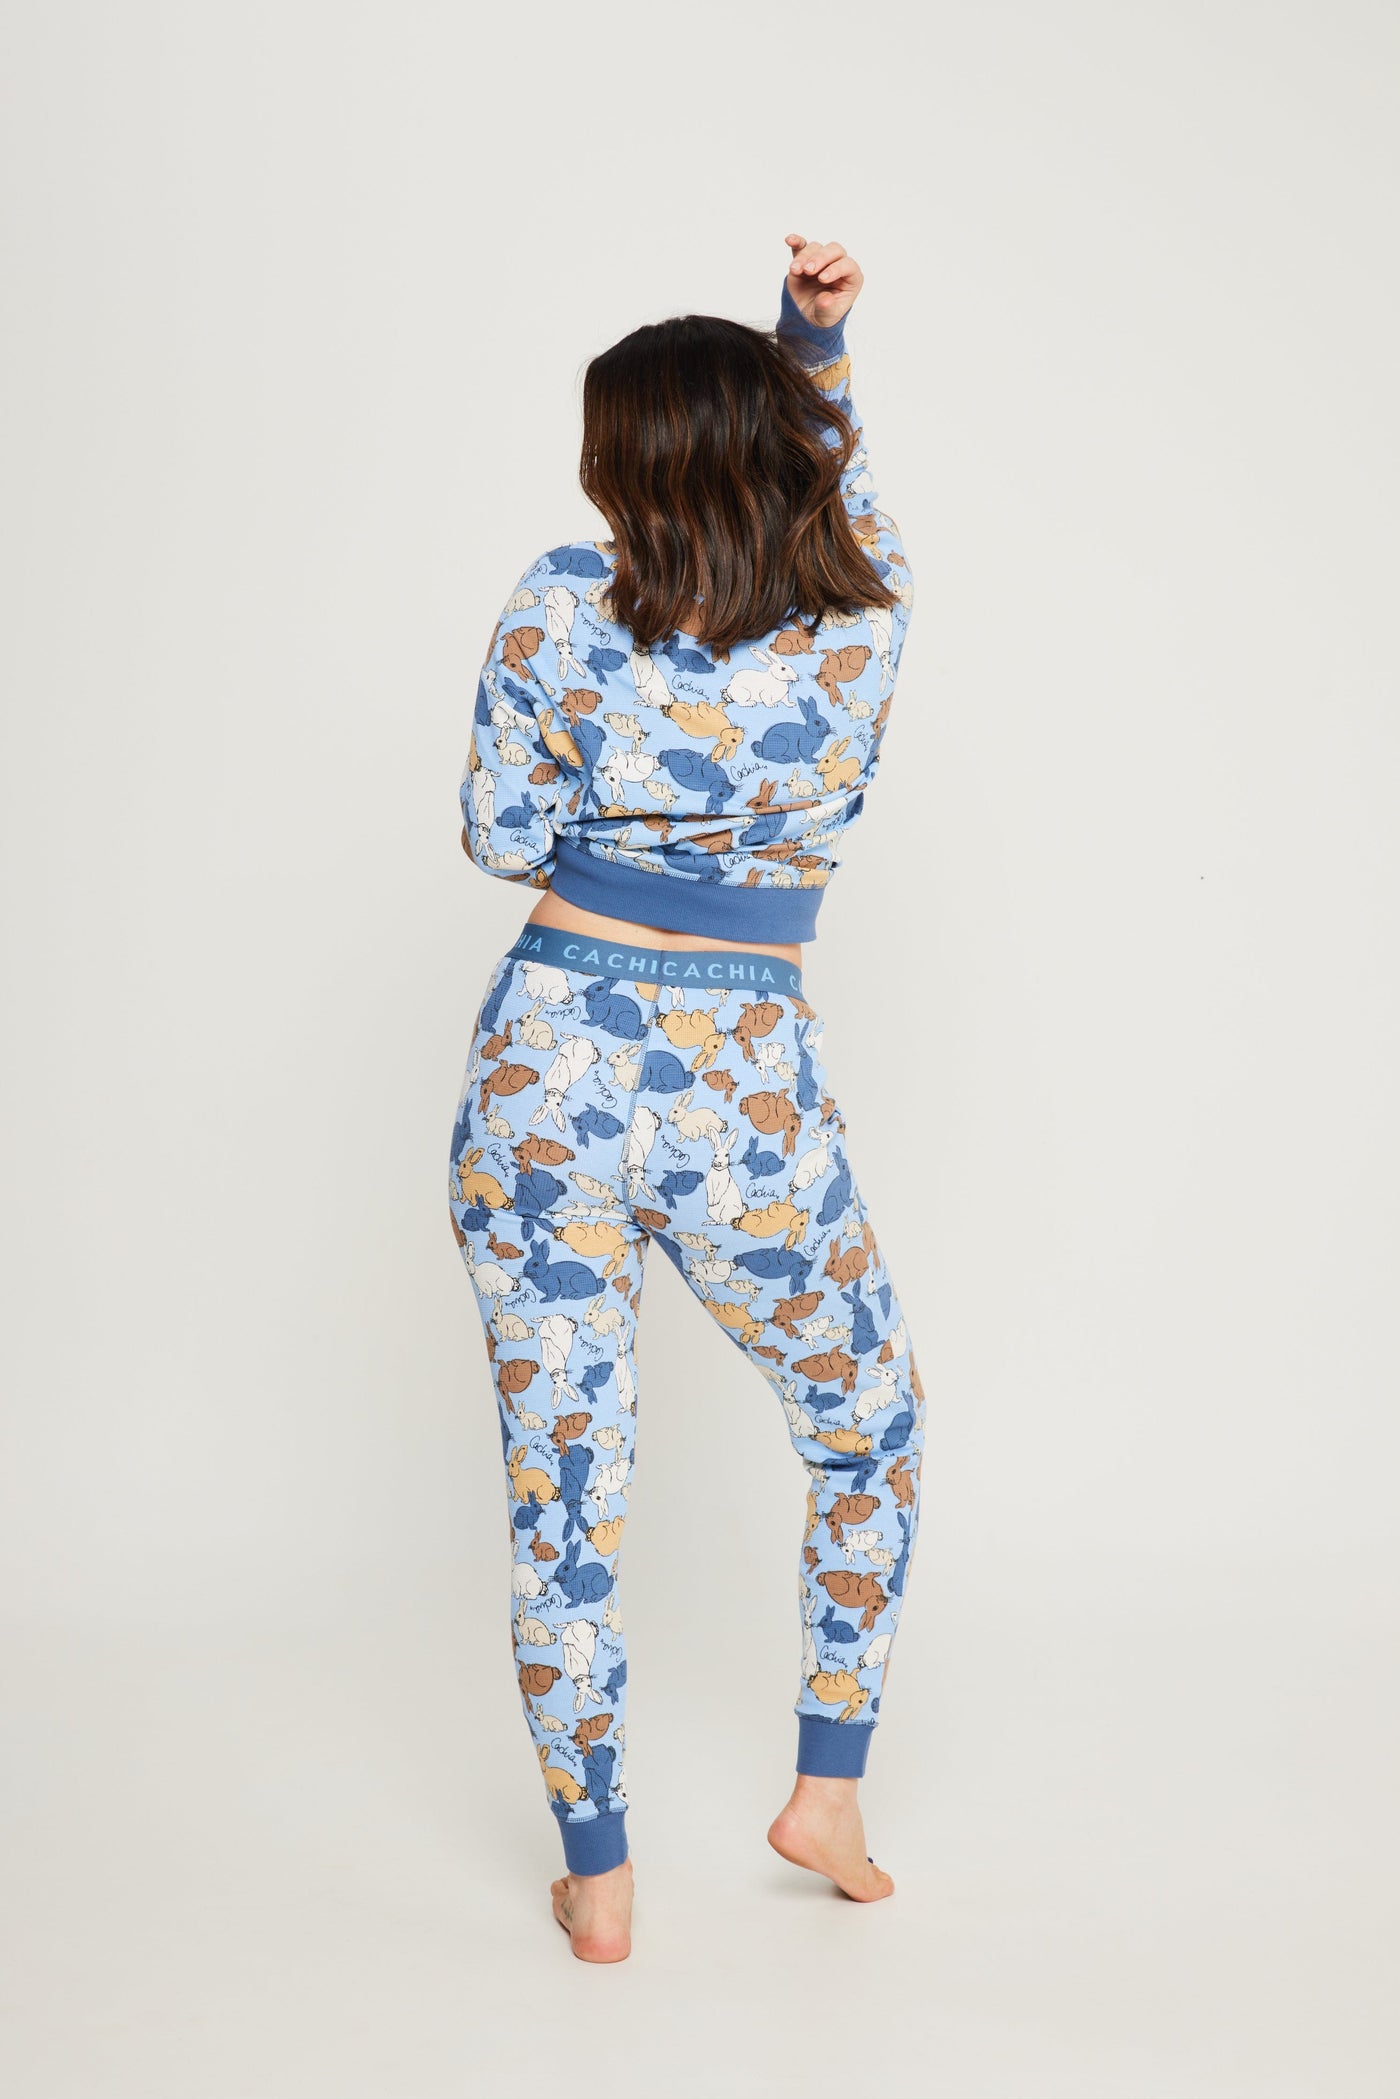 Cachia Cotton Tail - Womens Pajamas